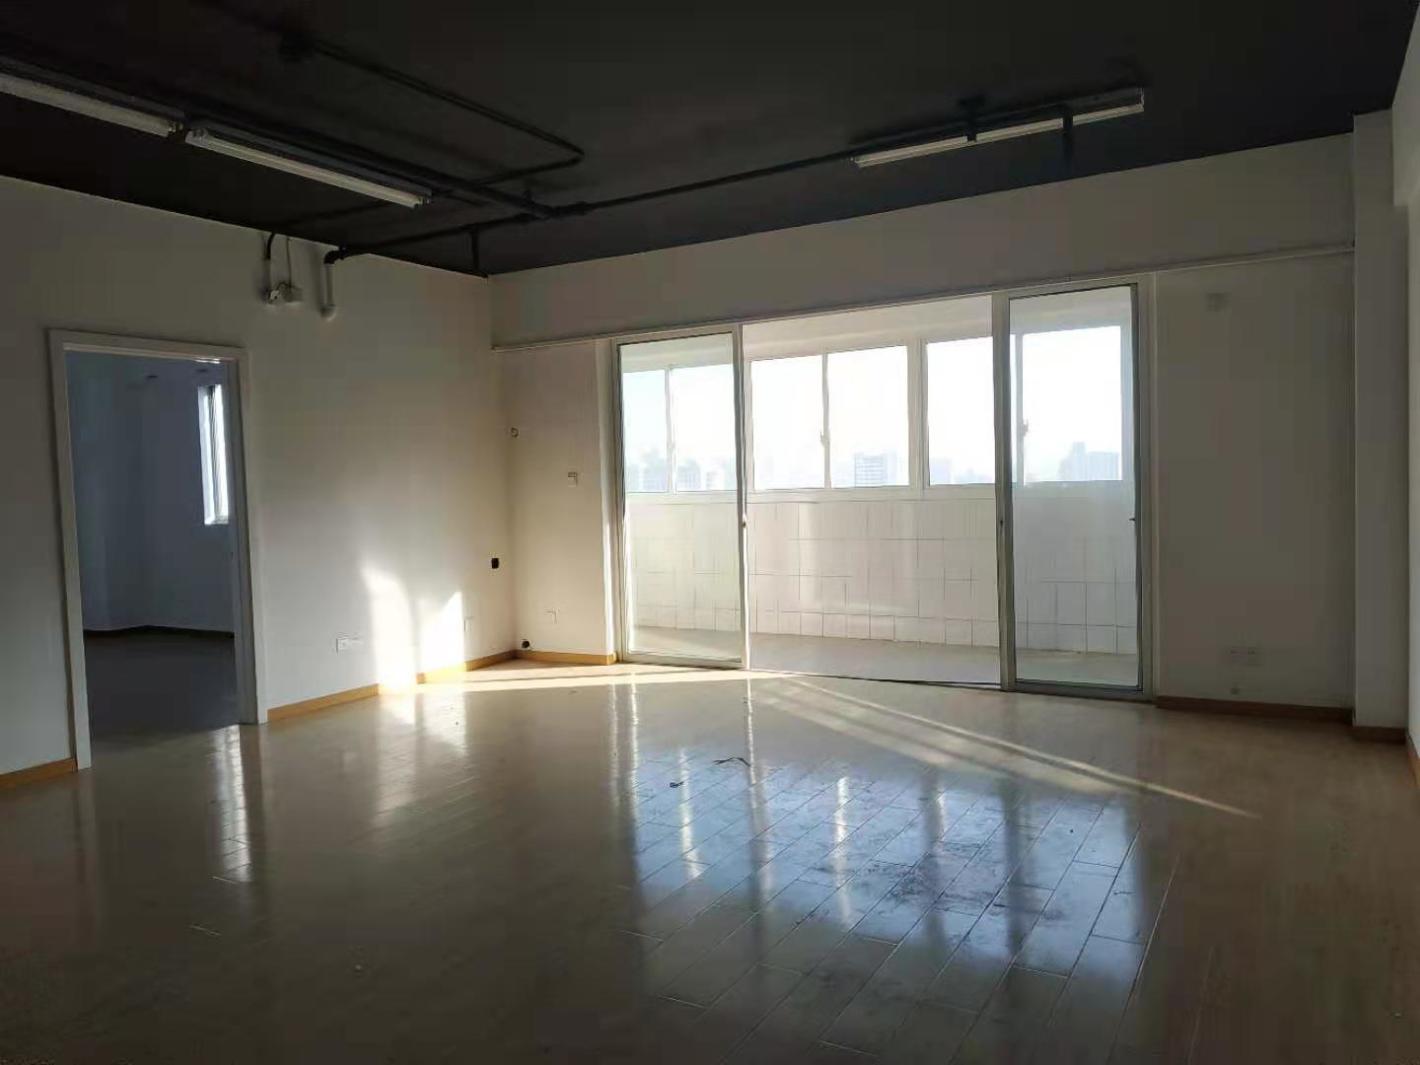 中关村科技大厦119平米办公室出租-租金价格3.65元/m²/天